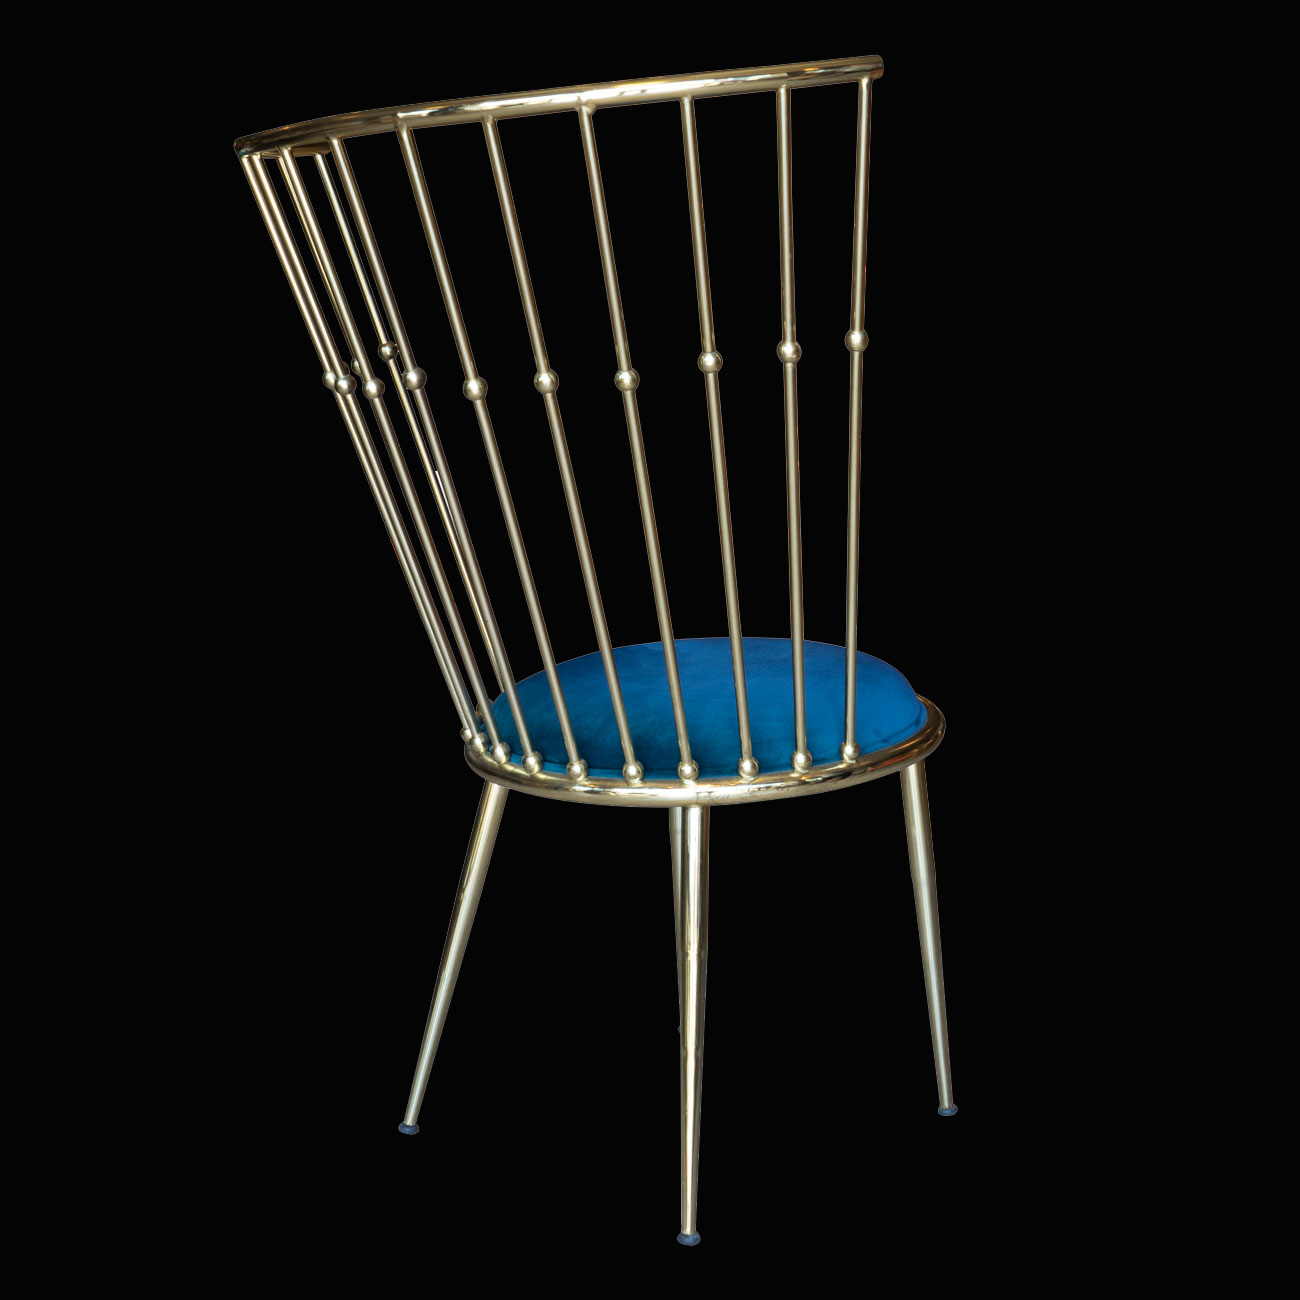 sandalye modelleri, metal sandalye fiyatları, sandalye tasarımları